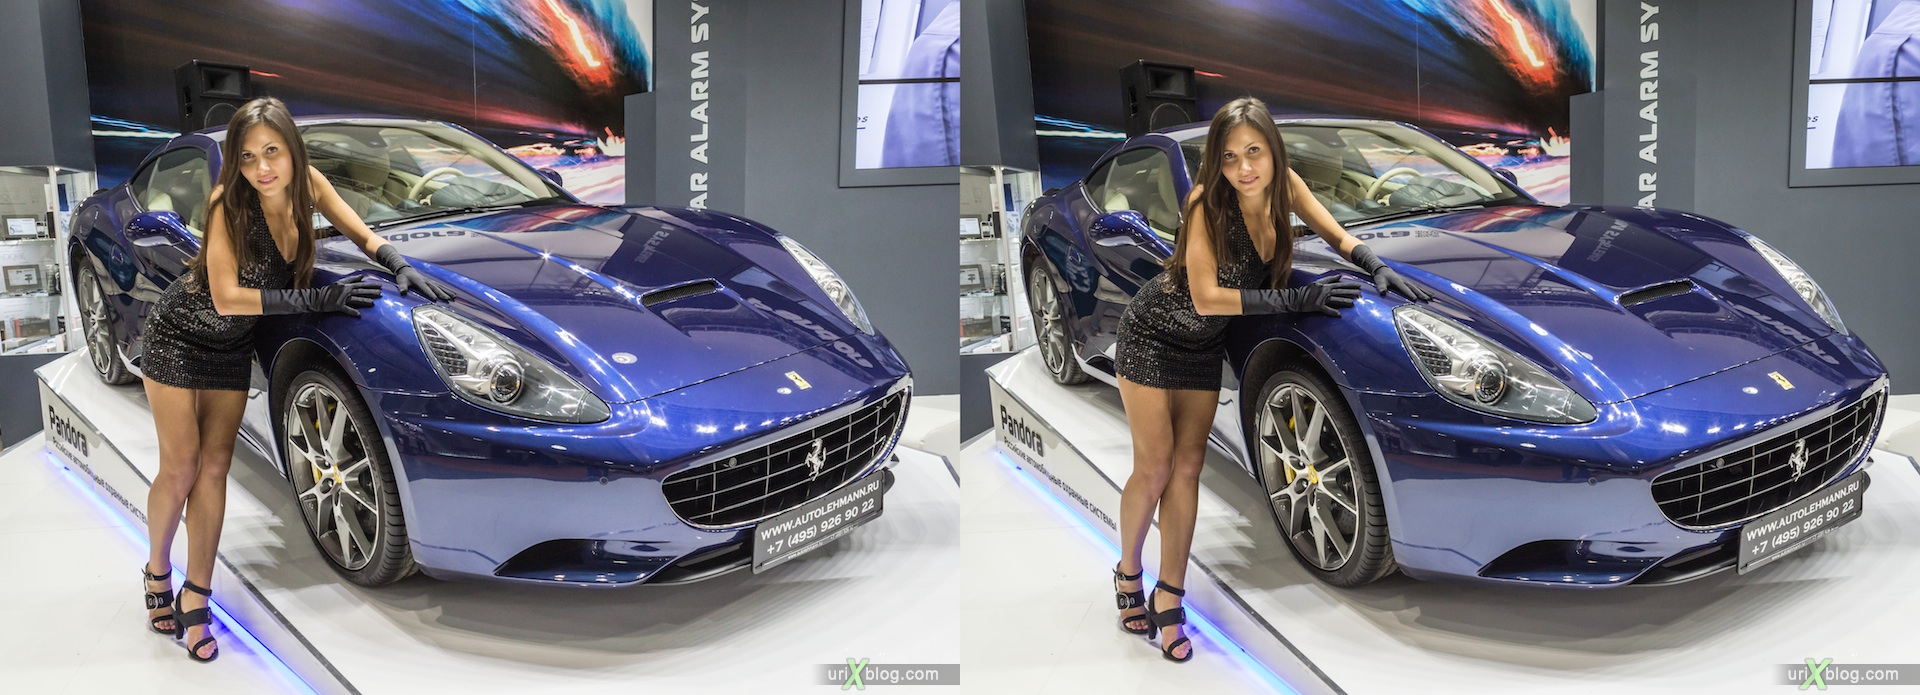 2012, Peugeot, девушка, модель, Московский международный автомобильный салон, ММАС, Крокус Экспо, 3D, стерео, стереопара